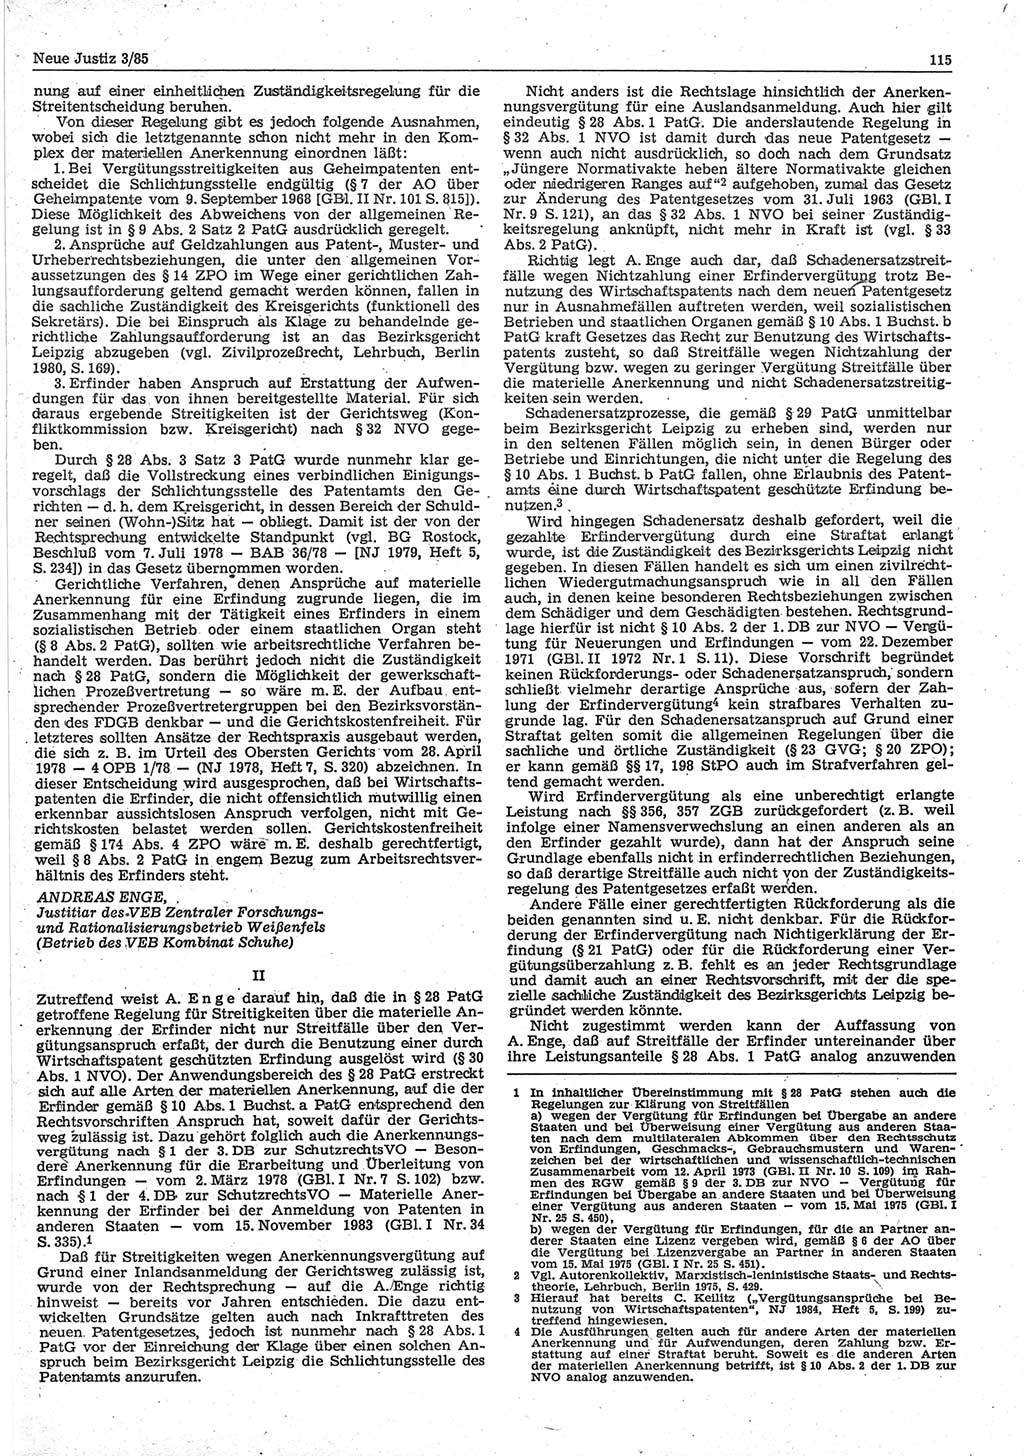 Neue Justiz (NJ), Zeitschrift für sozialistisches Recht und Gesetzlichkeit [Deutsche Demokratische Republik (DDR)], 39. Jahrgang 1985, Seite 115 (NJ DDR 1985, S. 115)